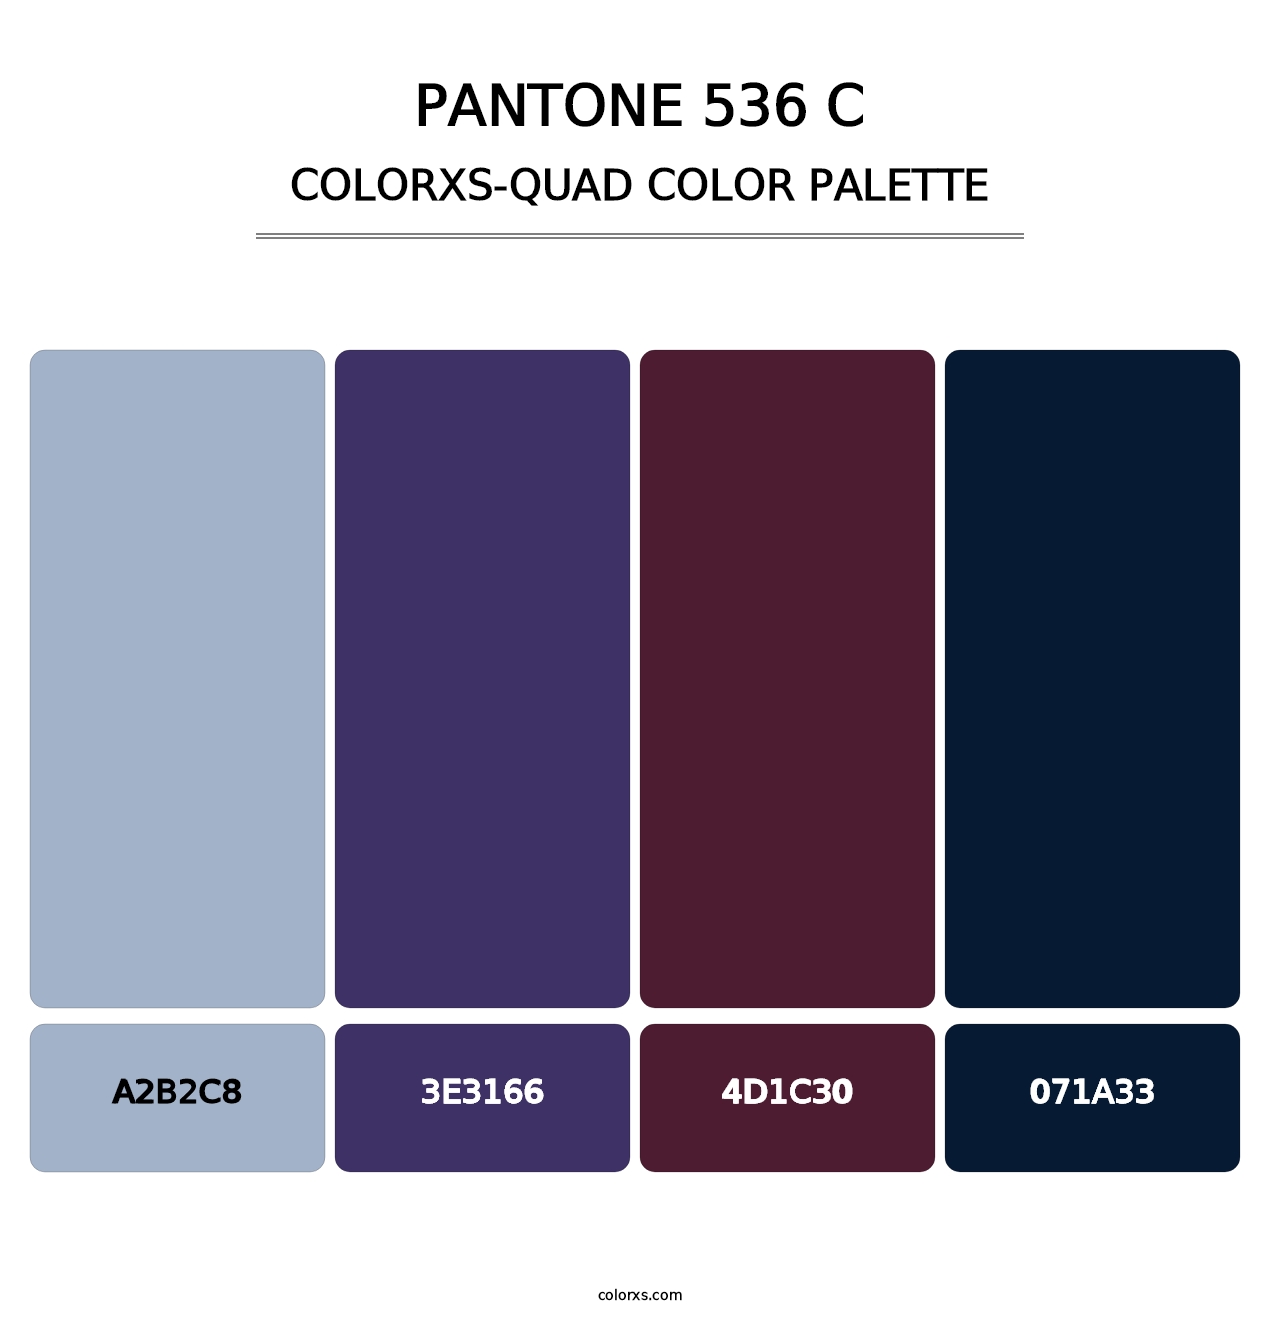 PANTONE 536 C - Colorxs Quad Palette